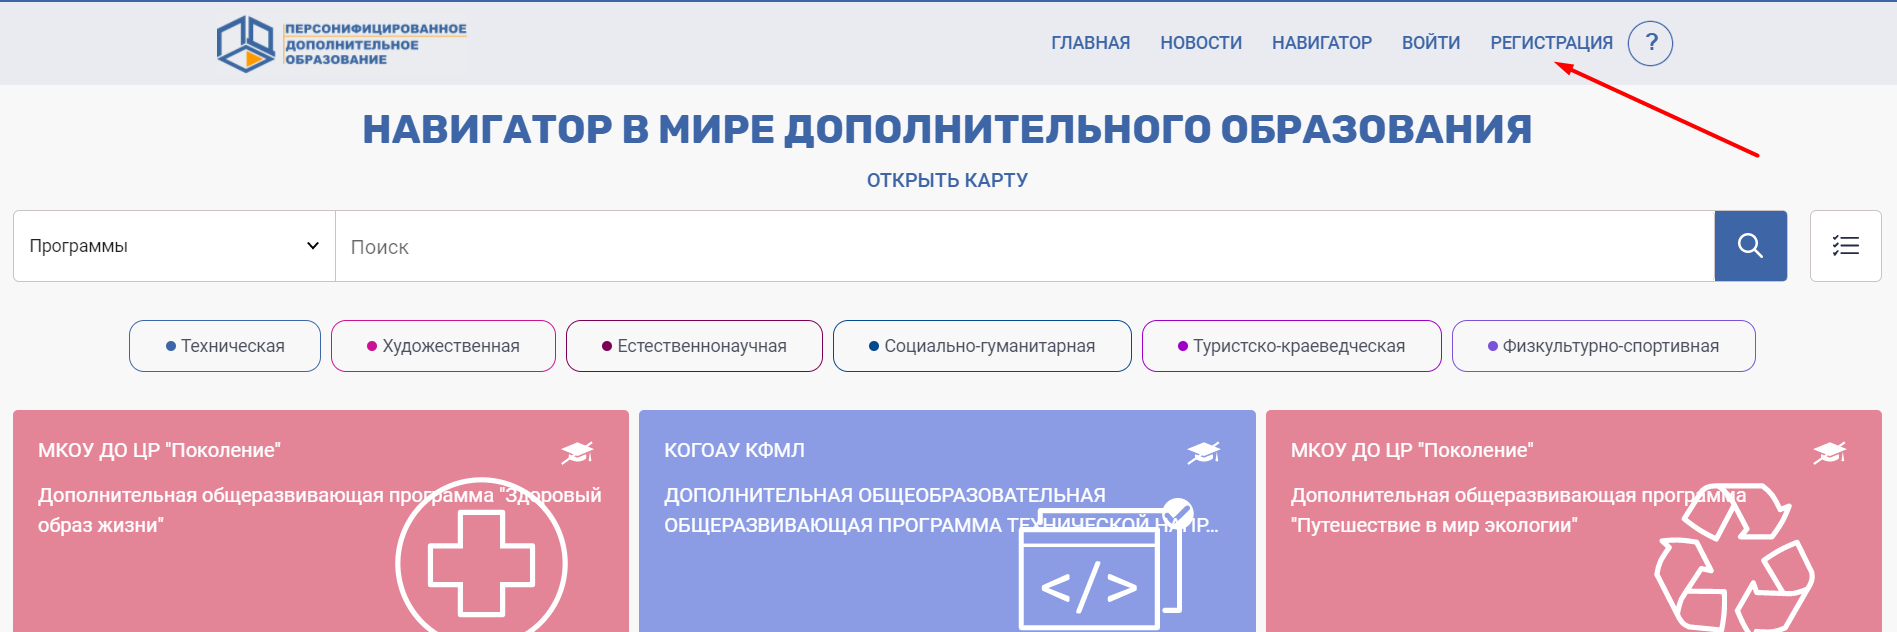 Сертификат на кружки для детей московская область как получить